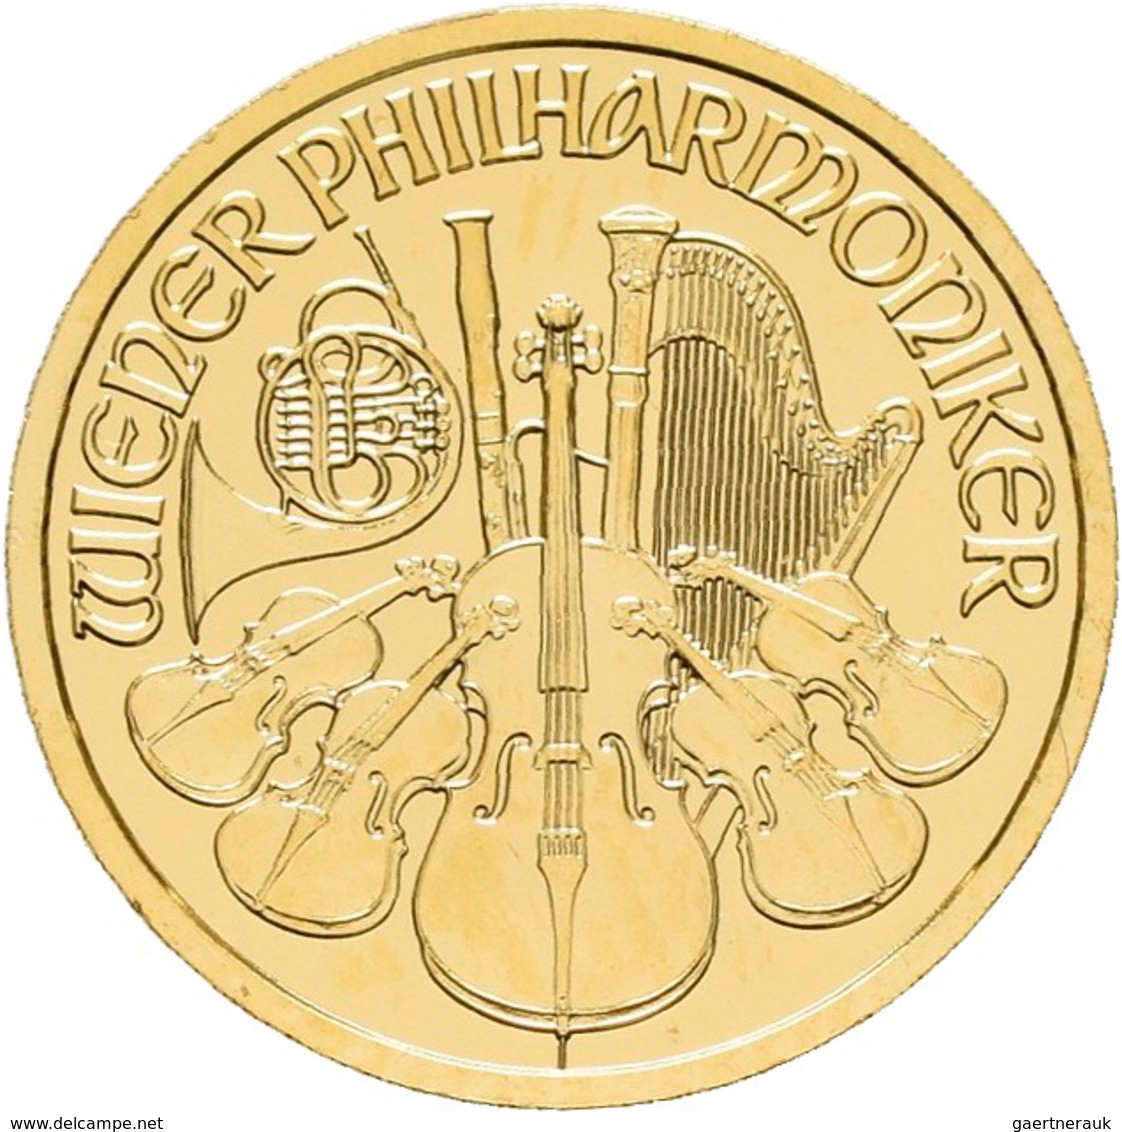 Österreich - Anlagegold: 10 Euro 2005, Wiener Philharmoniker, Gold 999,9, 1/10 Unze, Stempelglanz. - Autriche